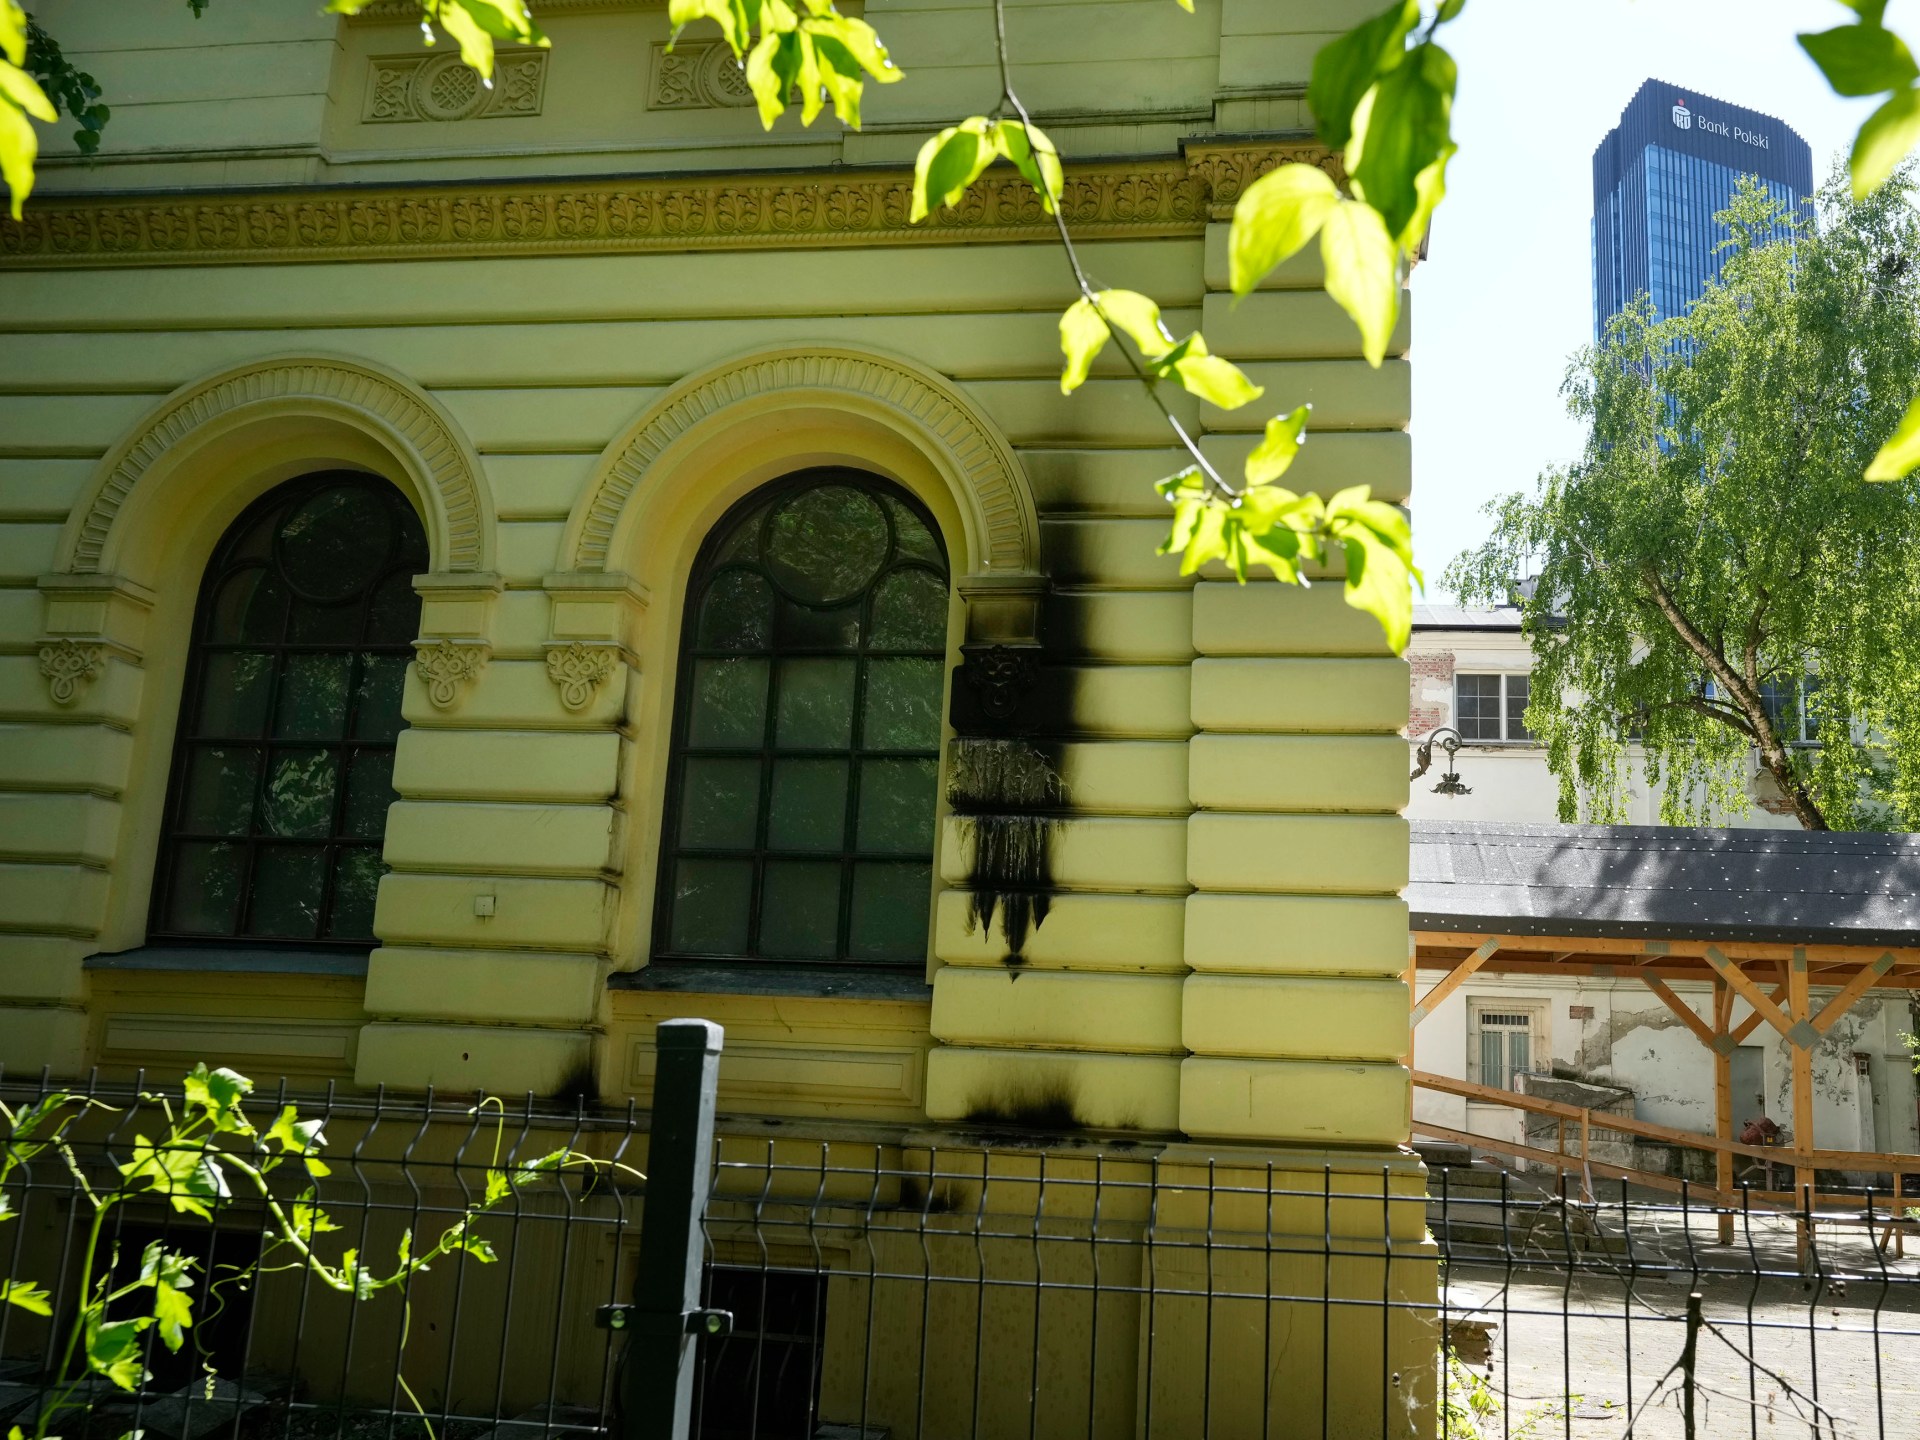 Polscy politycy potępiają podpalenie żydowskiej synagogi w Warszawie  Wiadomości UE